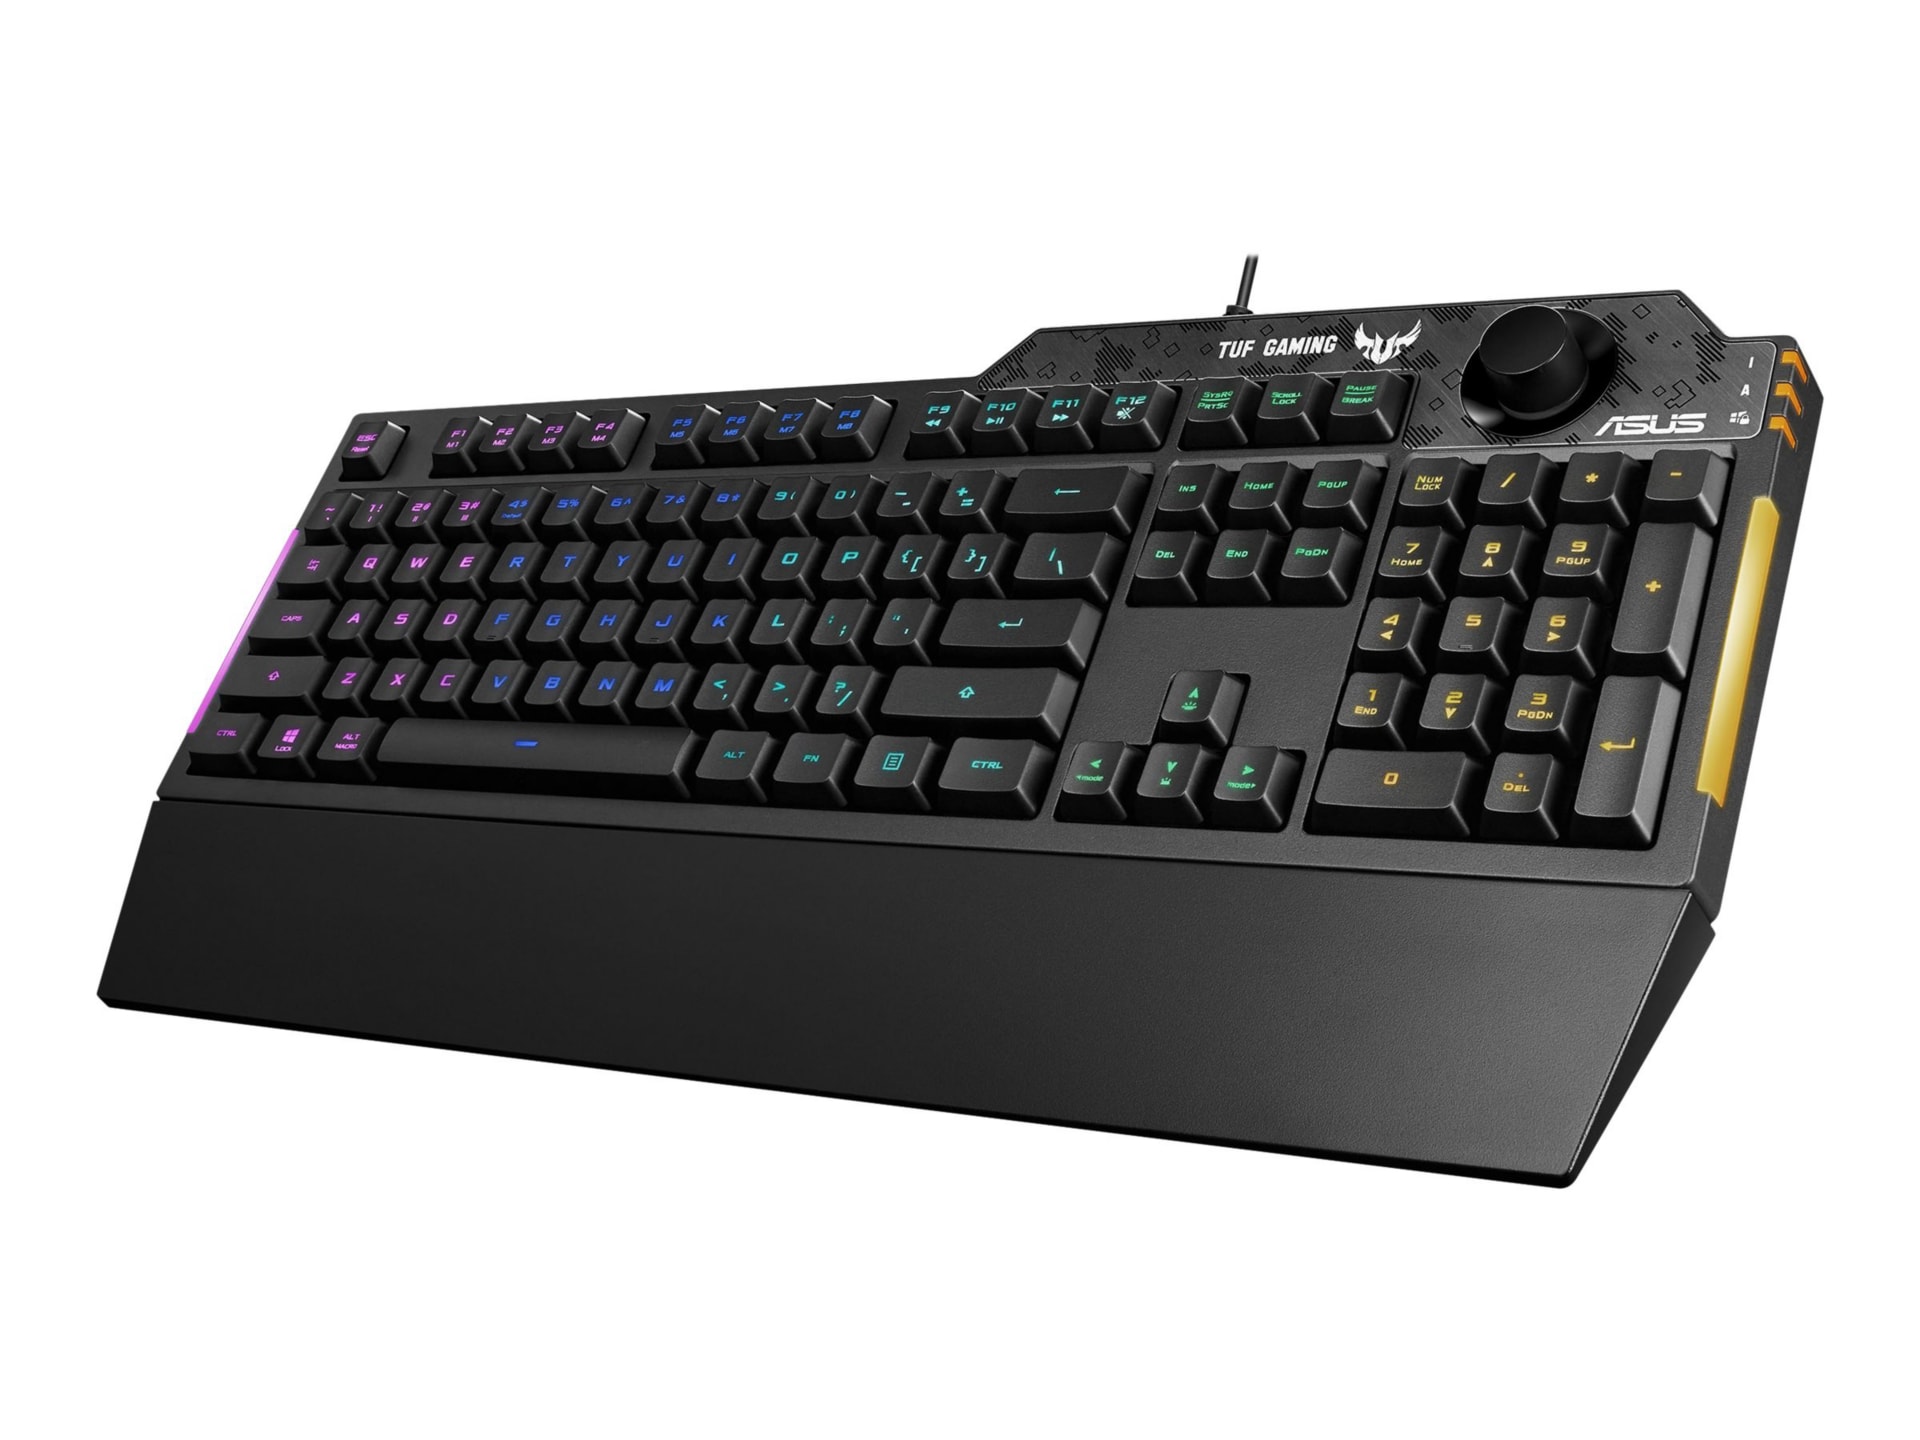 ASUS TUF Gaming K1 - keyboard - Canadian English - black